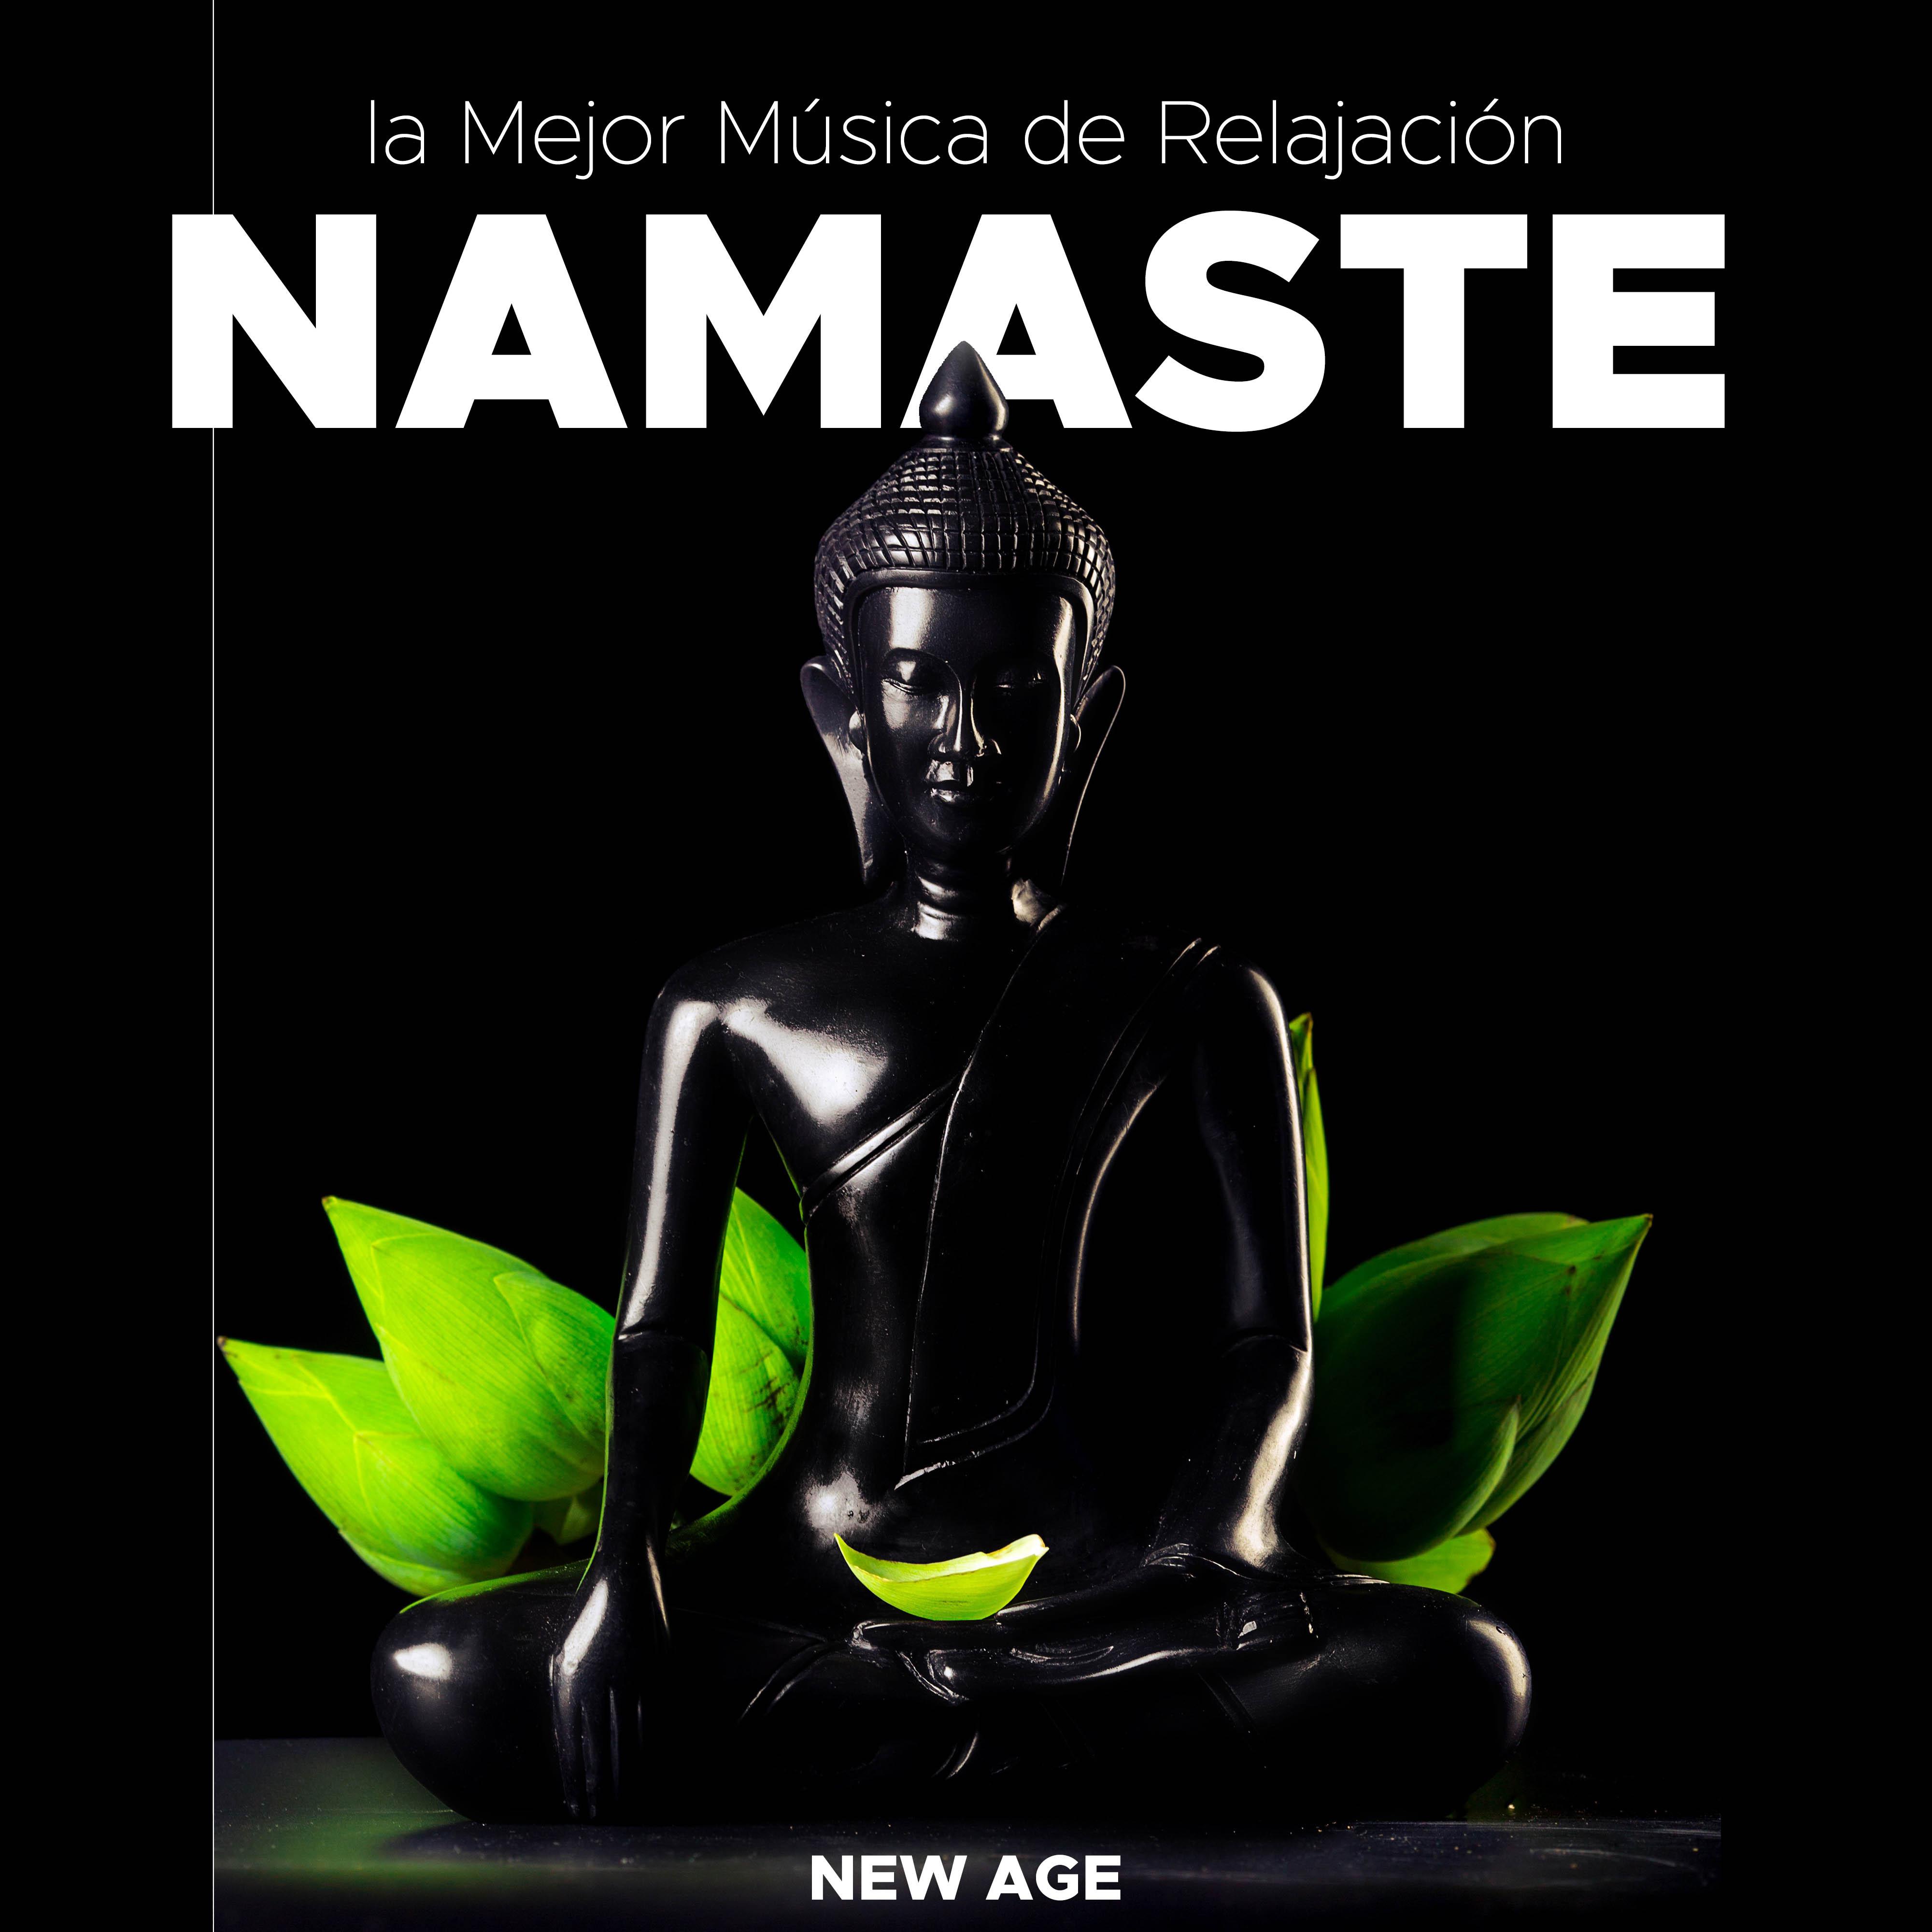 Namaste: la Mejor Música de Relajación, Ambient, New Age, Instrumental (Lluvia, Olas del Mar, Naturaleza y Ruido Blanco)